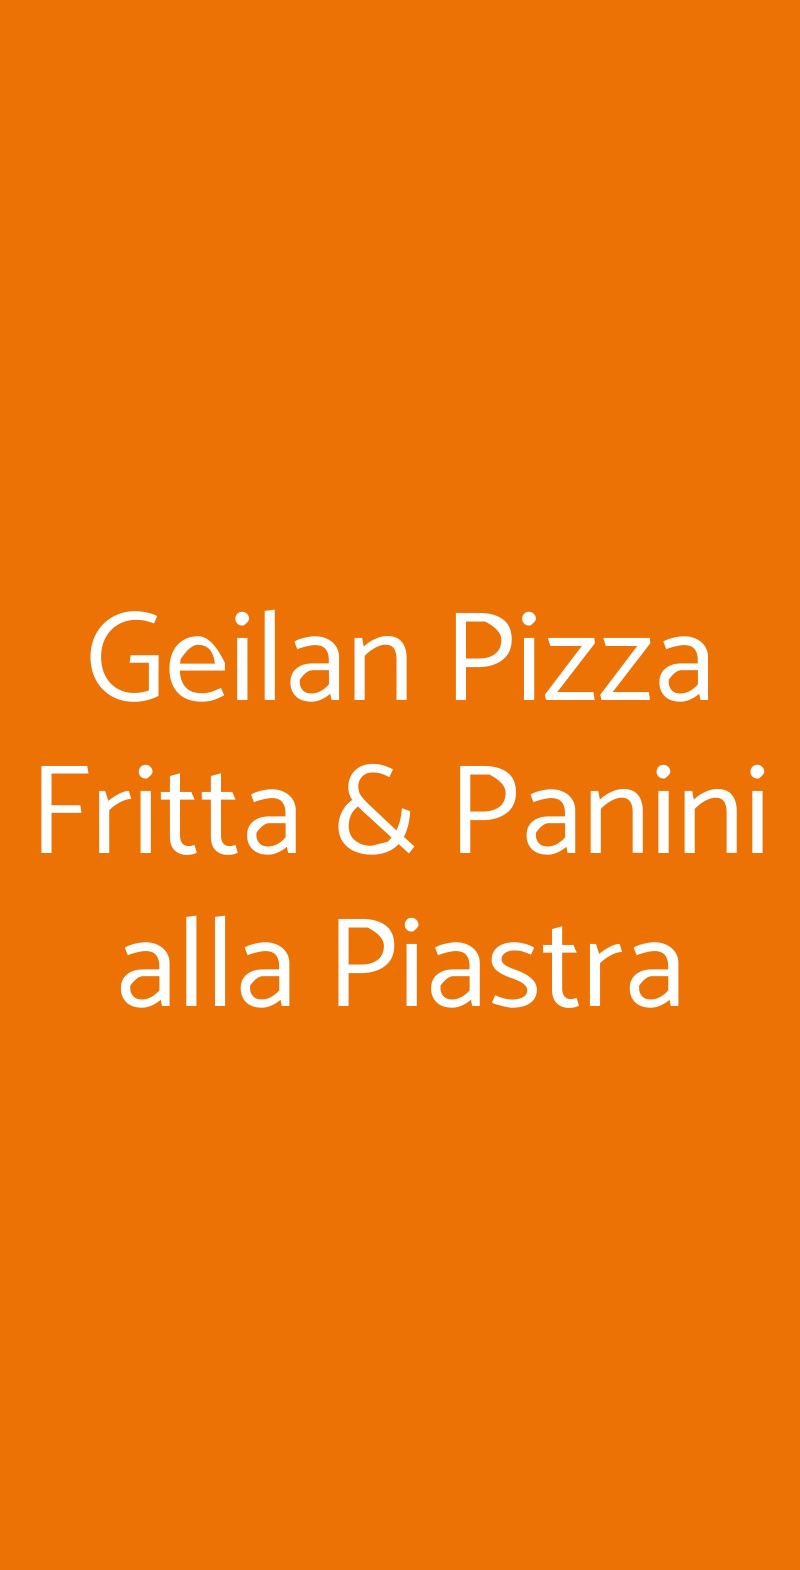 Geilan Pizza Fritta & Panini alla Piastra Casoria menù 1 pagina